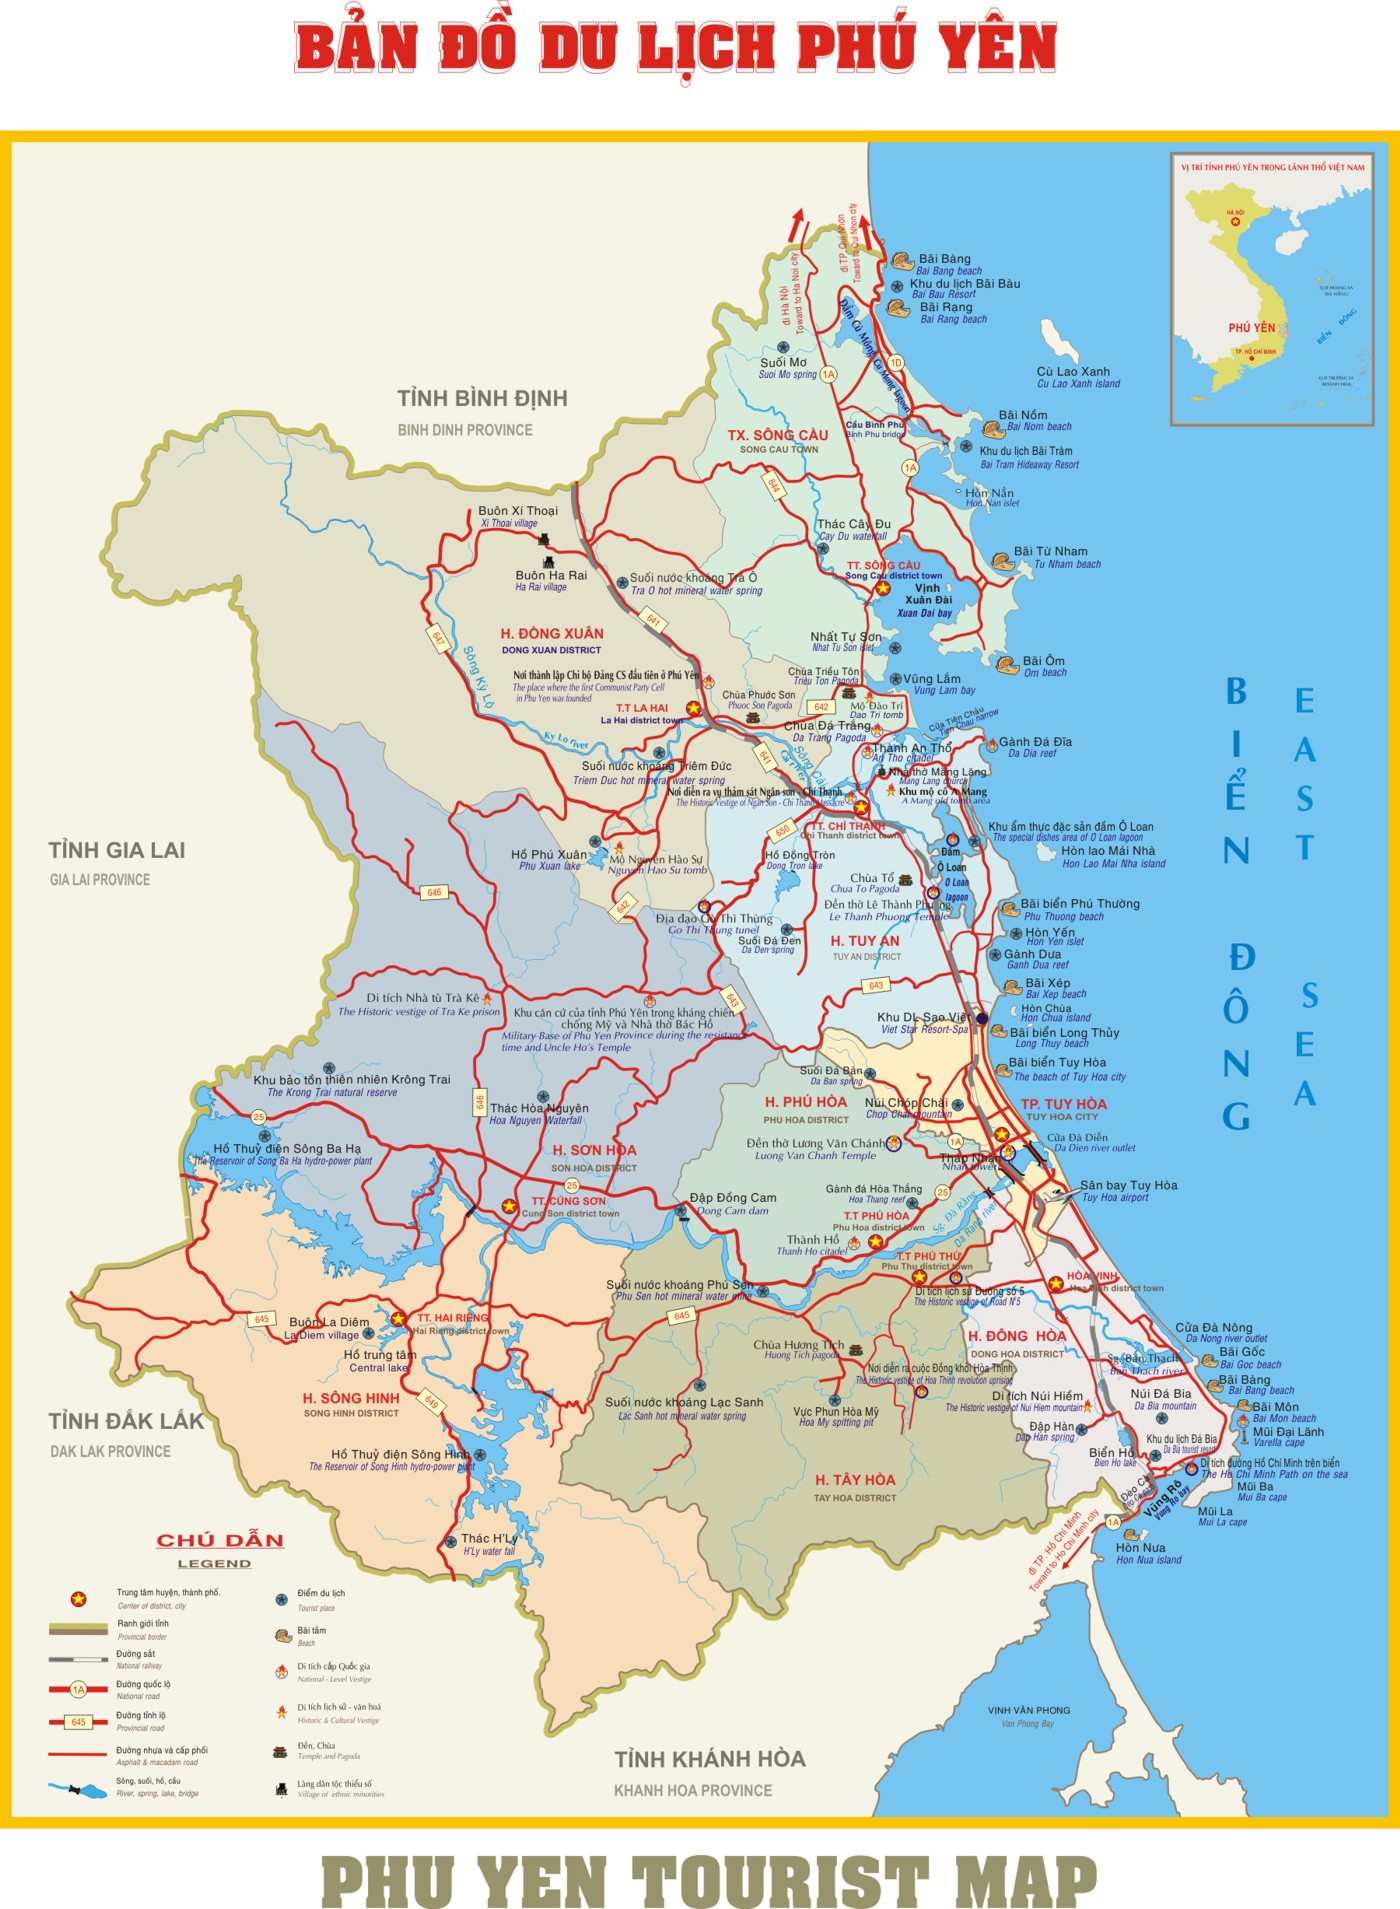 Bản đồ hành chính tỉnh Phú Yên mới nhất sẽ giúp bạn tiện lợi hơn trong việc tra cứu thông tin về cơ sở hạ tầng và các khu dân cư trên địa bàn tỉnh. Ngoài ra, bản đồ cũng cung cấp thông tin chi tiết về các địa danh nổi tiếng của Phú Yên như Gành Đá Đĩa hay Vườn quốc gia Xuân Sơn.